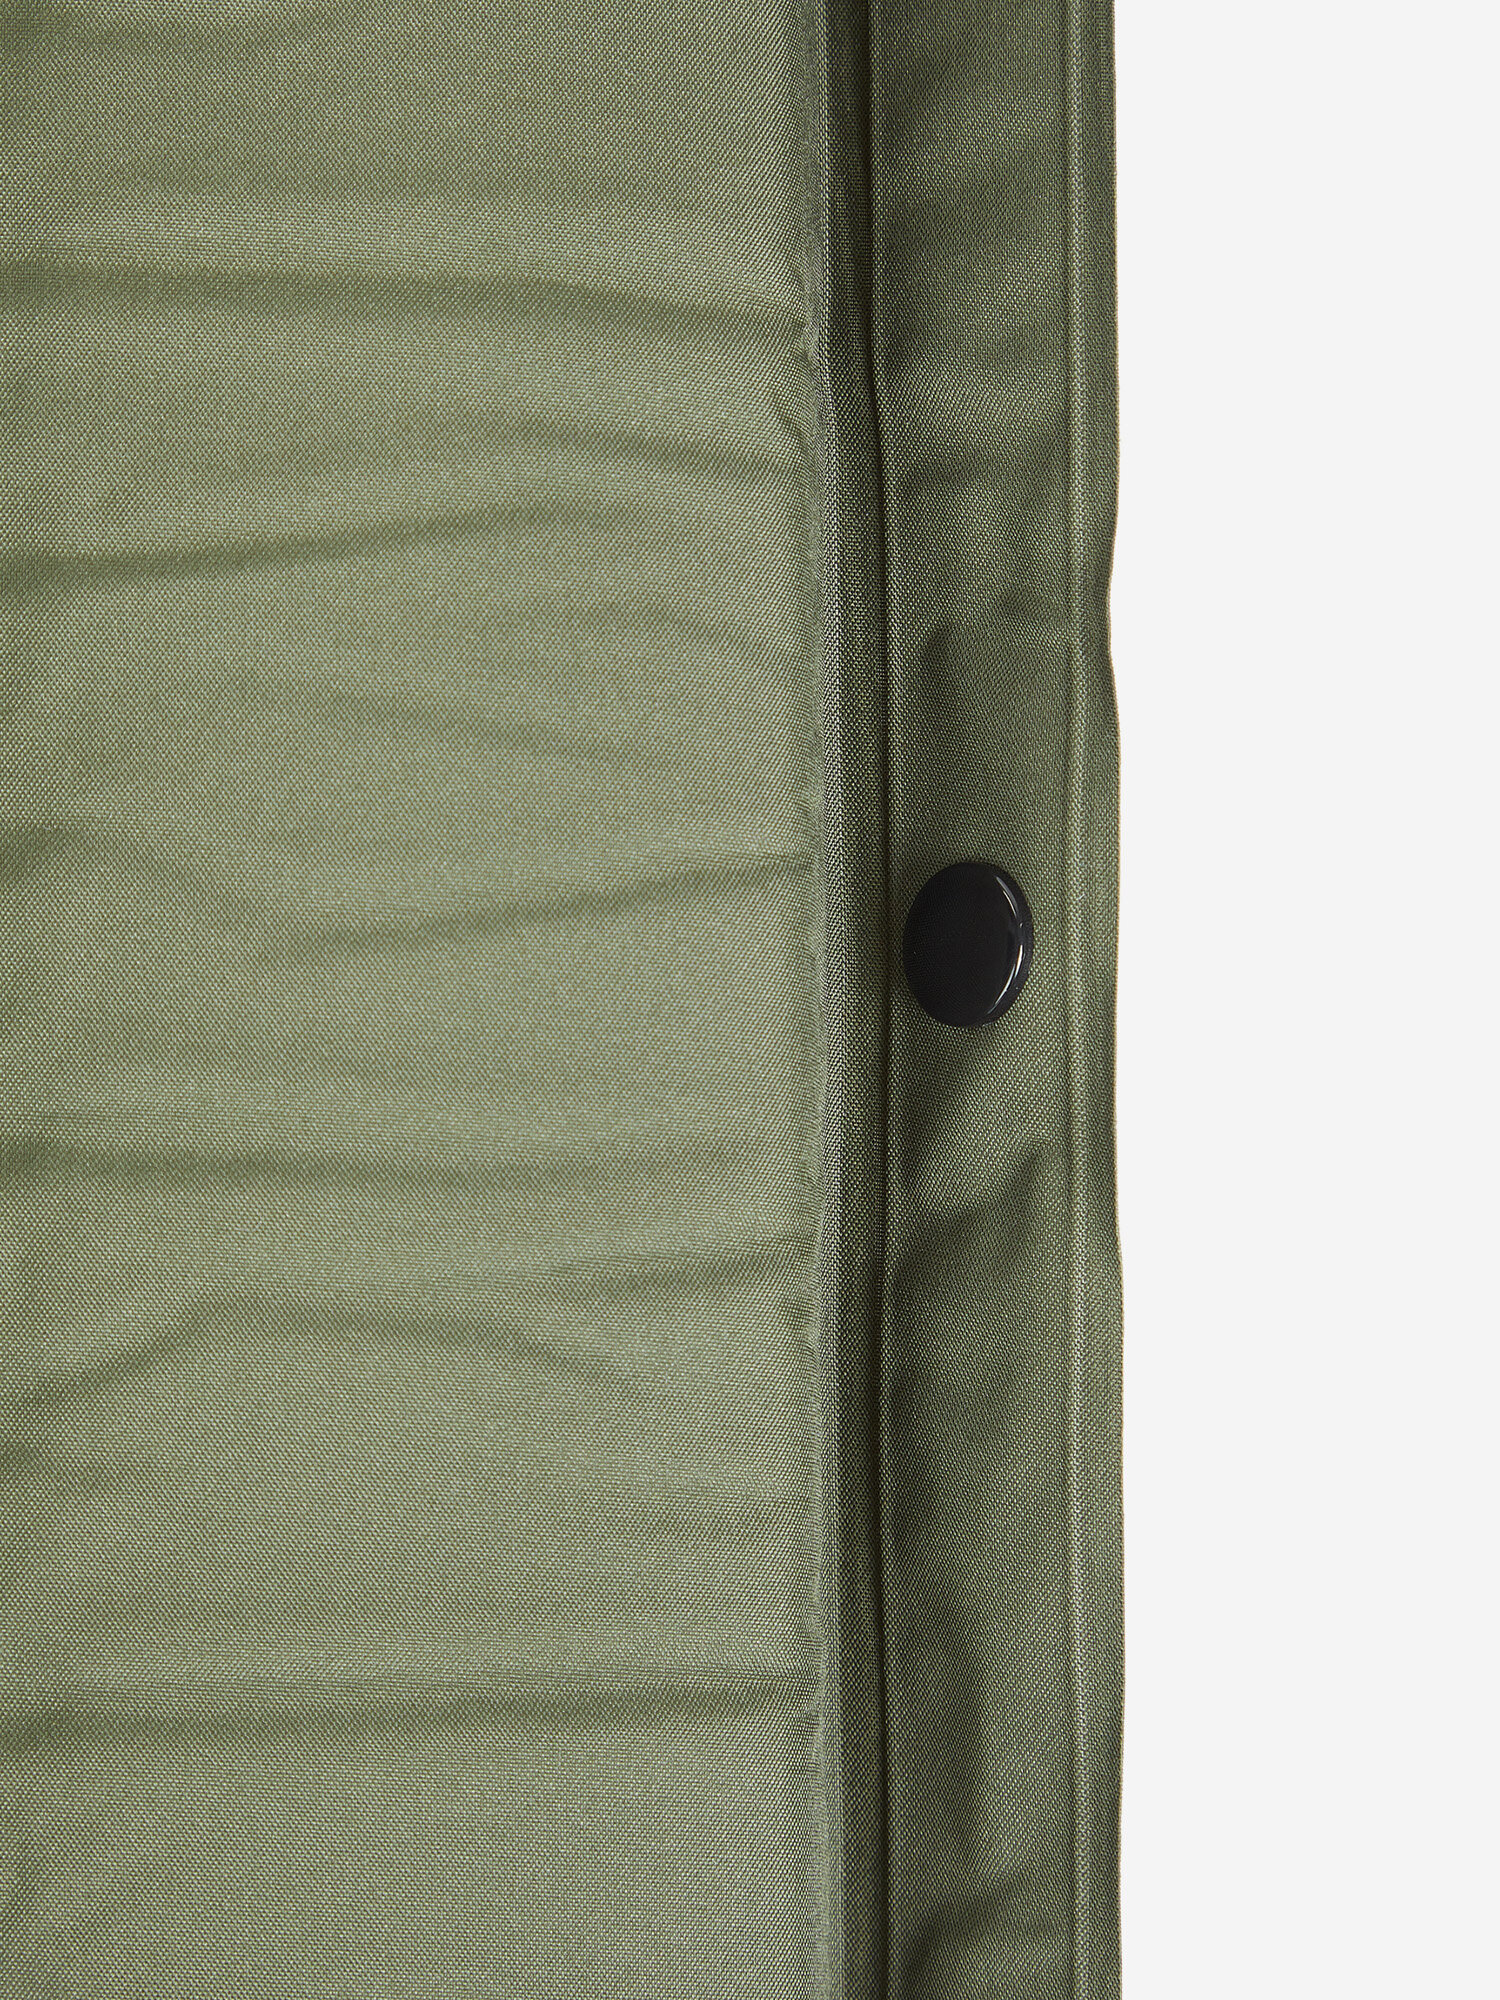 Коврик самонадувающийся Northland, 190 см, Зеленый, размер Без размера - фото №3